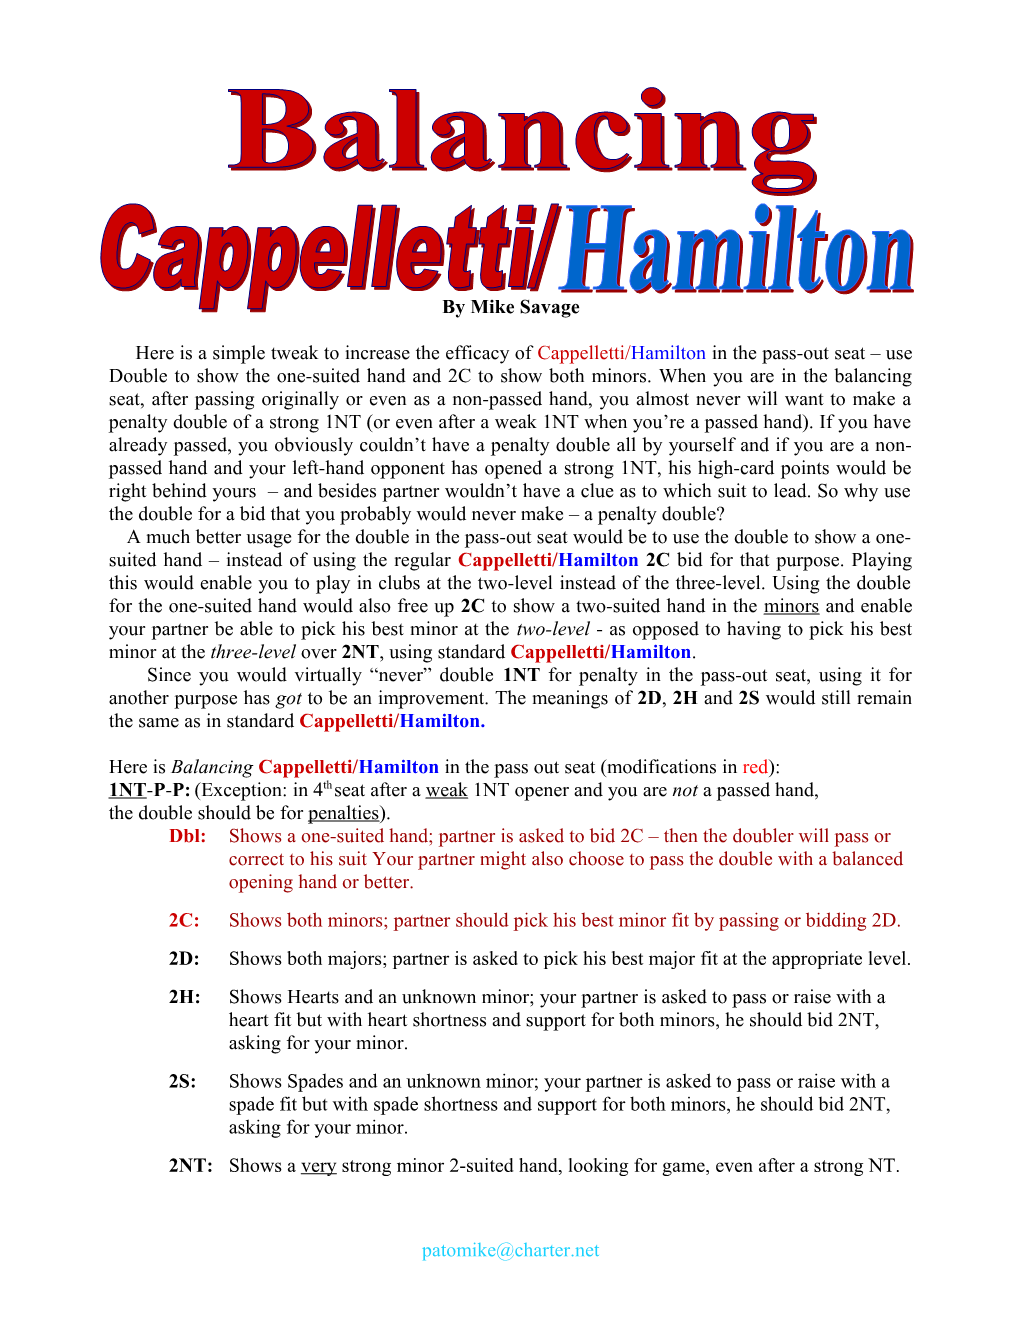 A Modification to Hamilton/Cappelletti